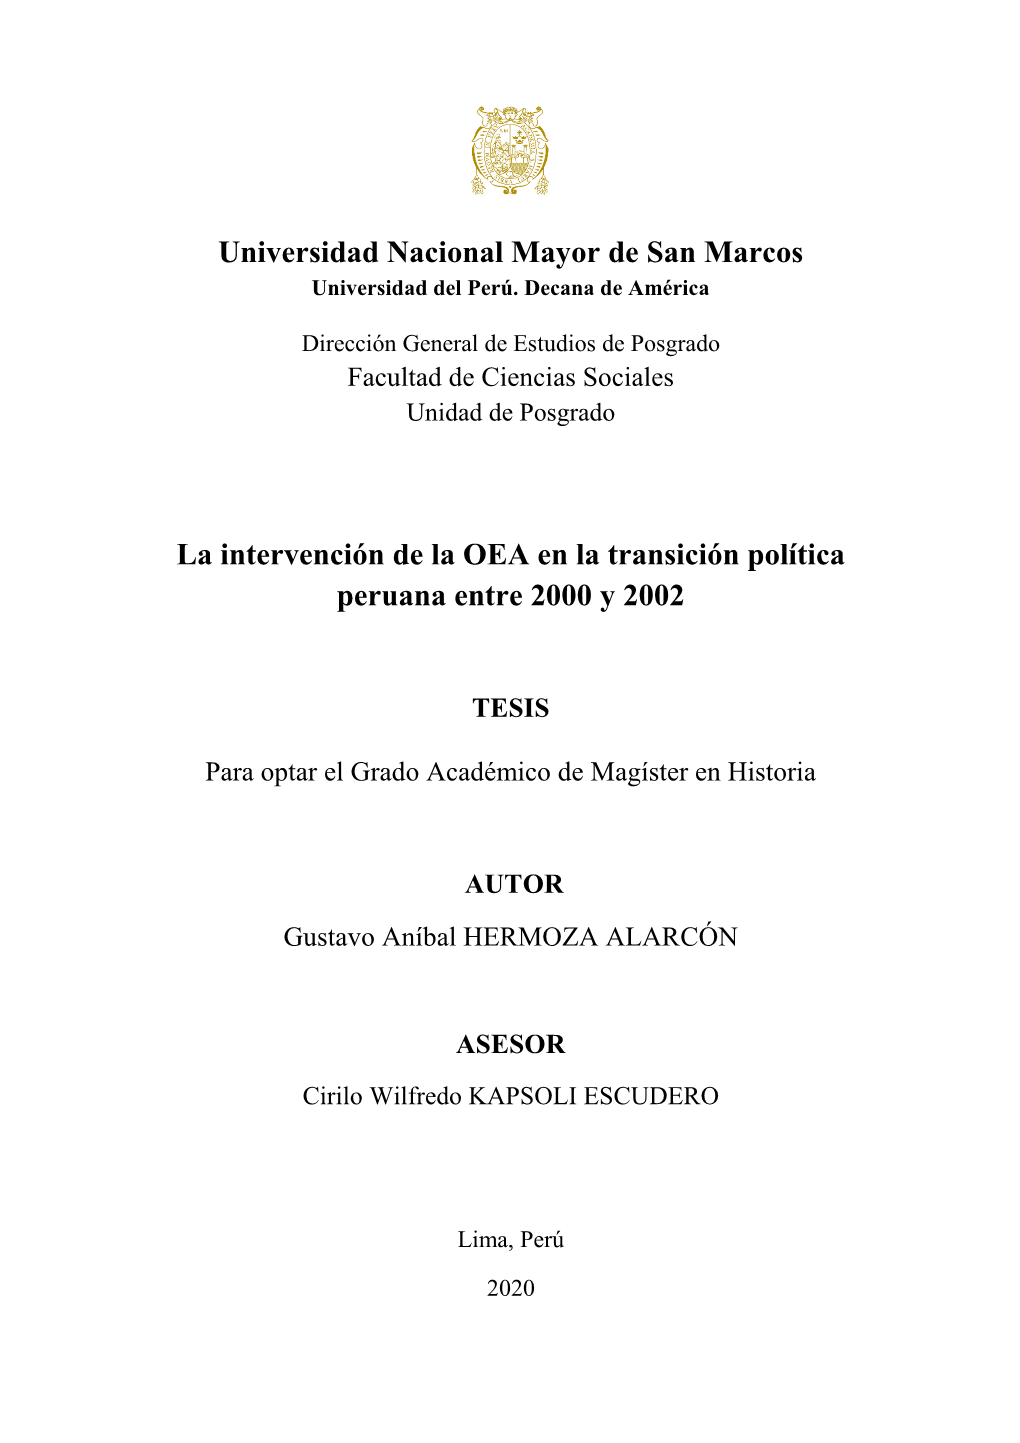 Universidad Nacional Mayor De San Marcos La Intervención De La OEA